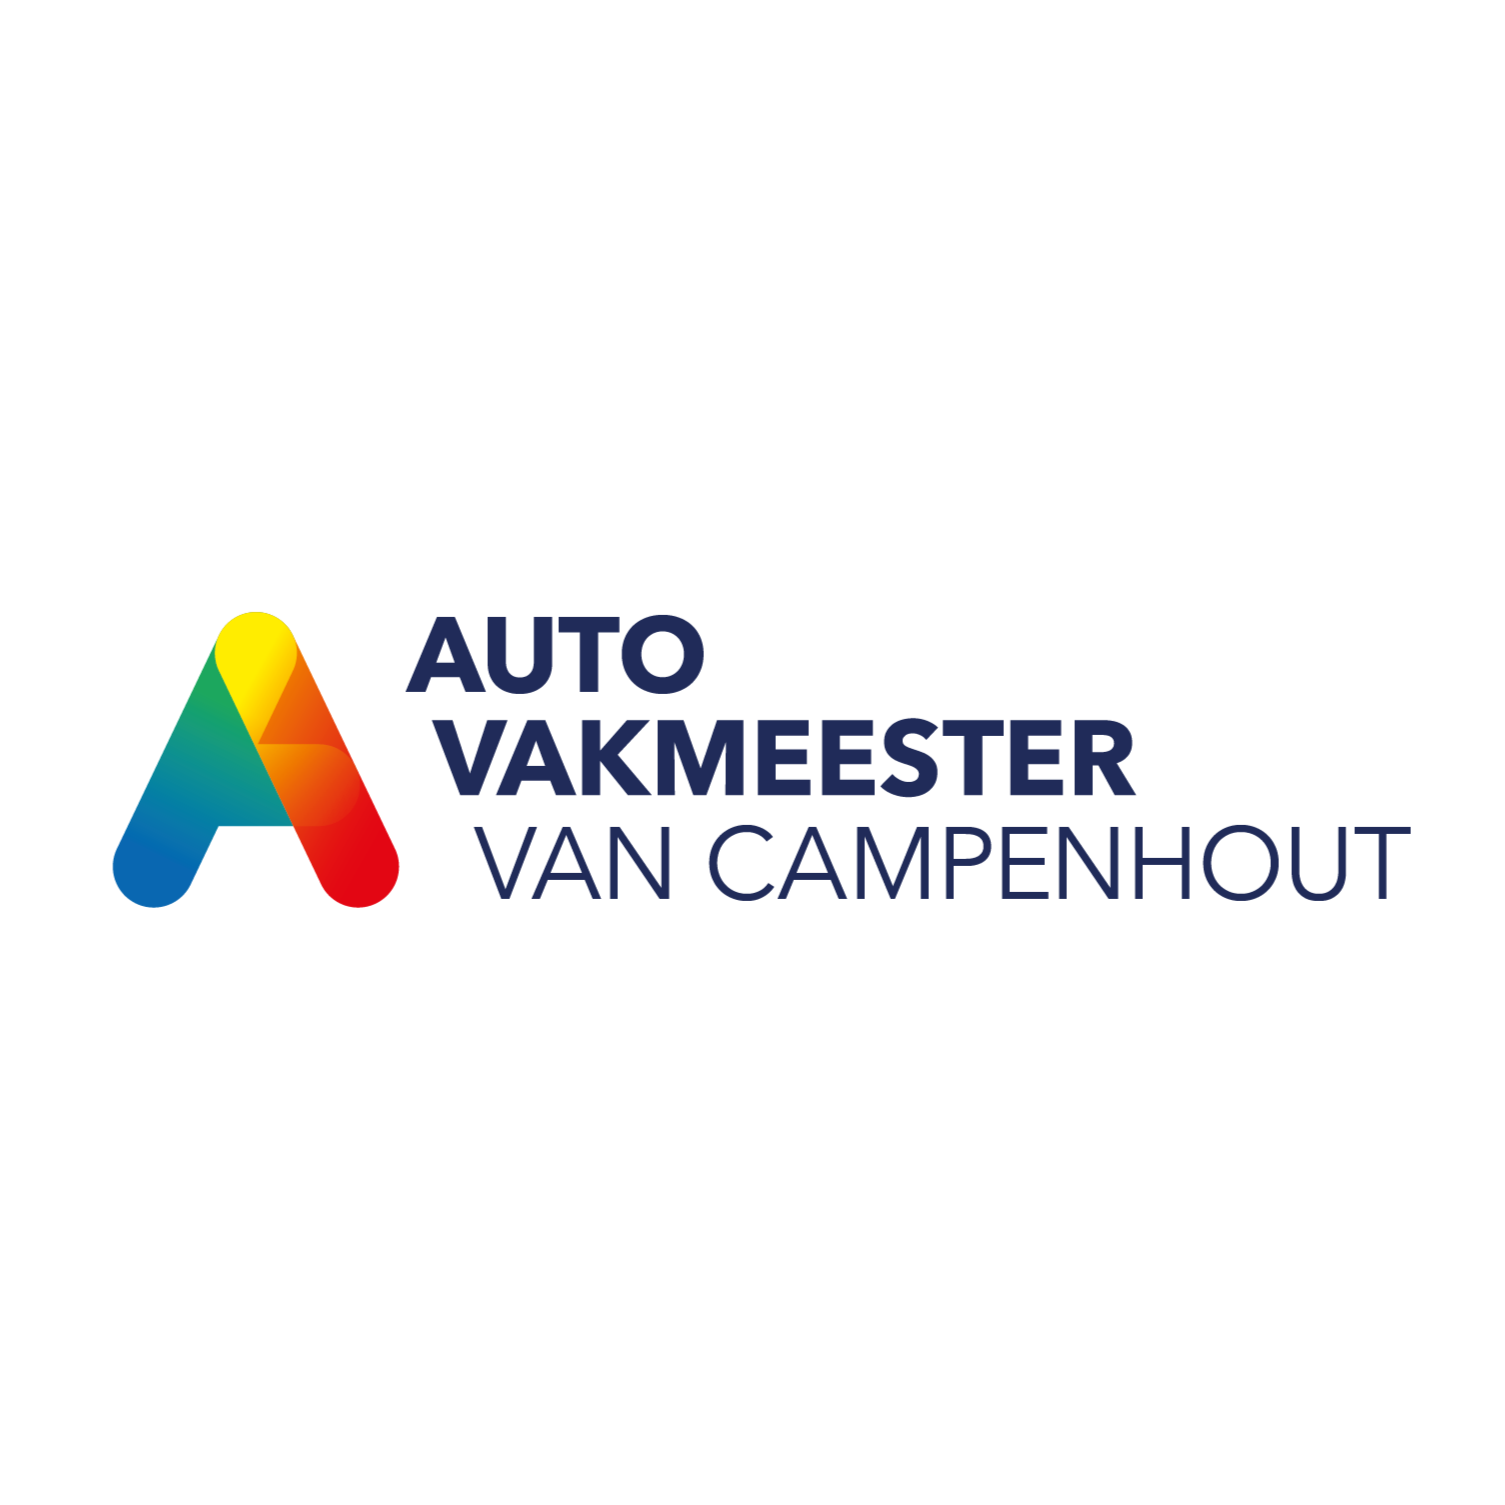 Autovakmeester van Campenhout Logo